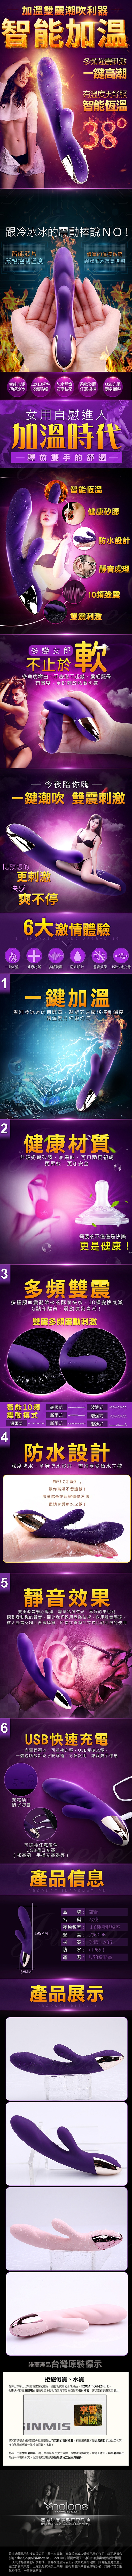 香港Funme-啟悅 Carey 10段變頻G點陰蒂防水按摩棒-紫-加溫款(特)